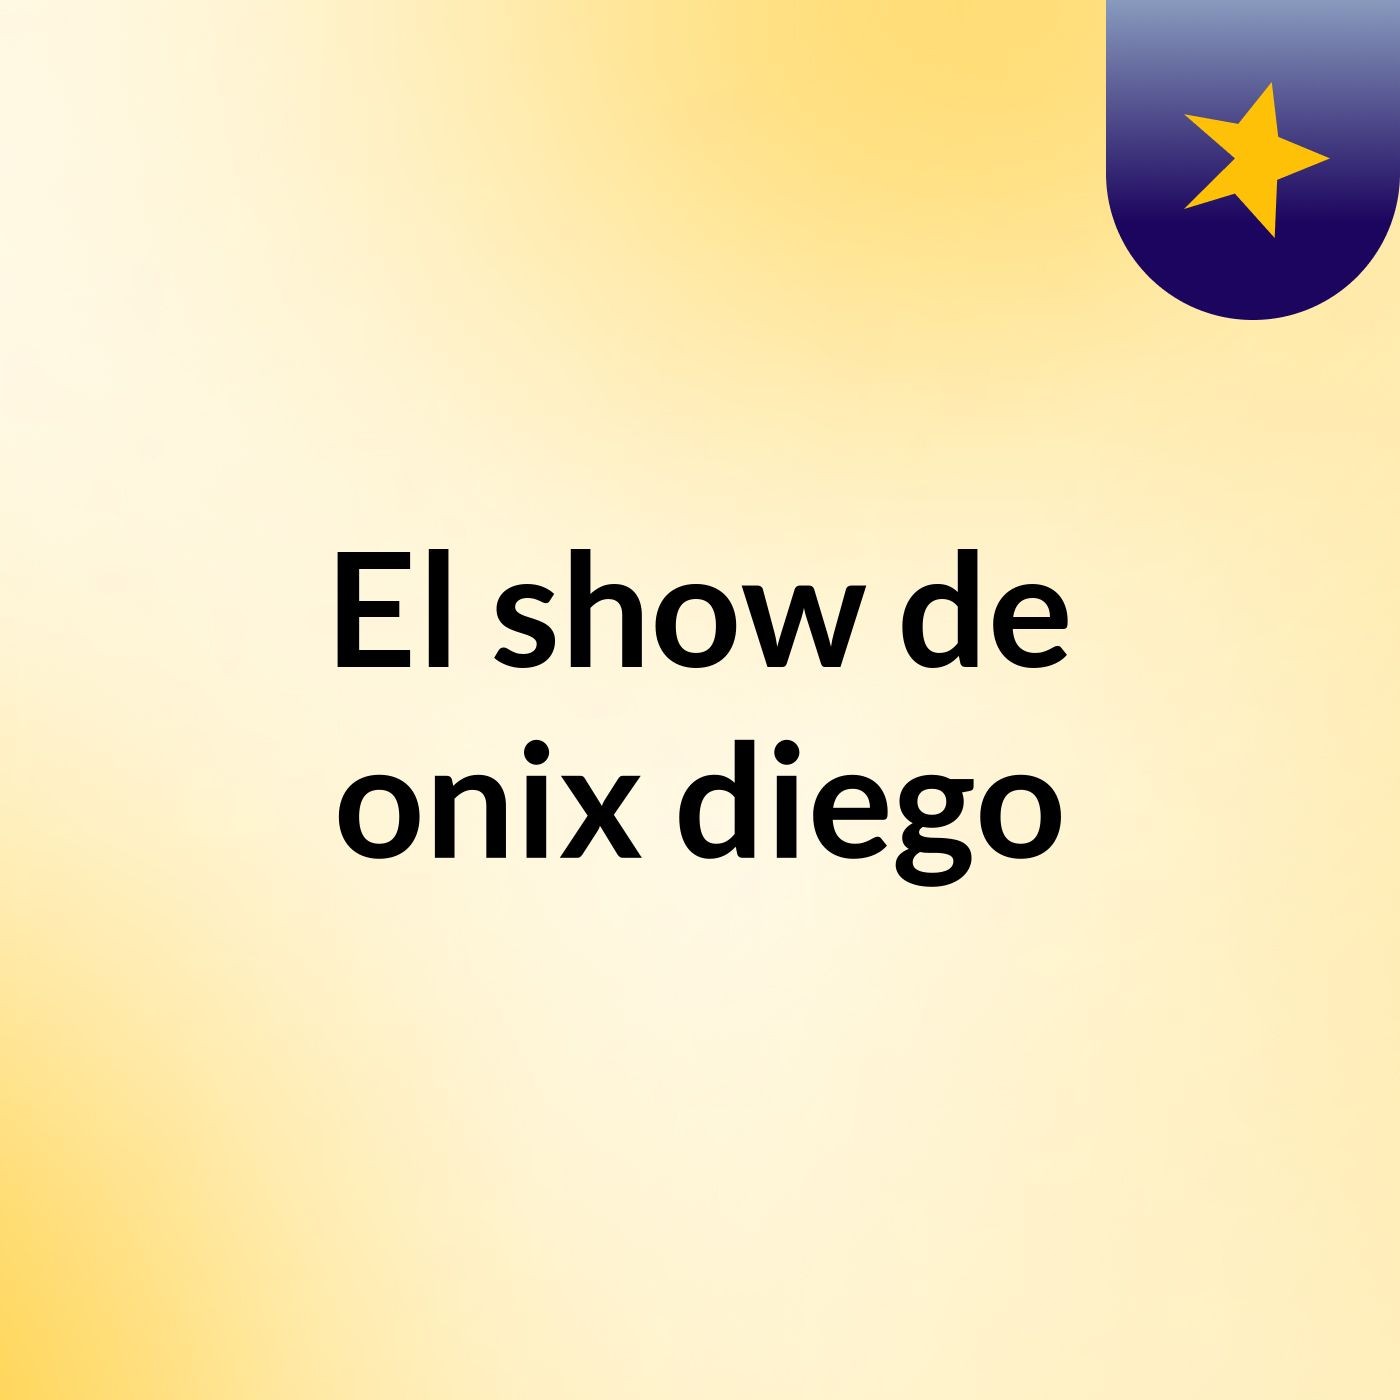 Episodio 3 - El show de onix diego